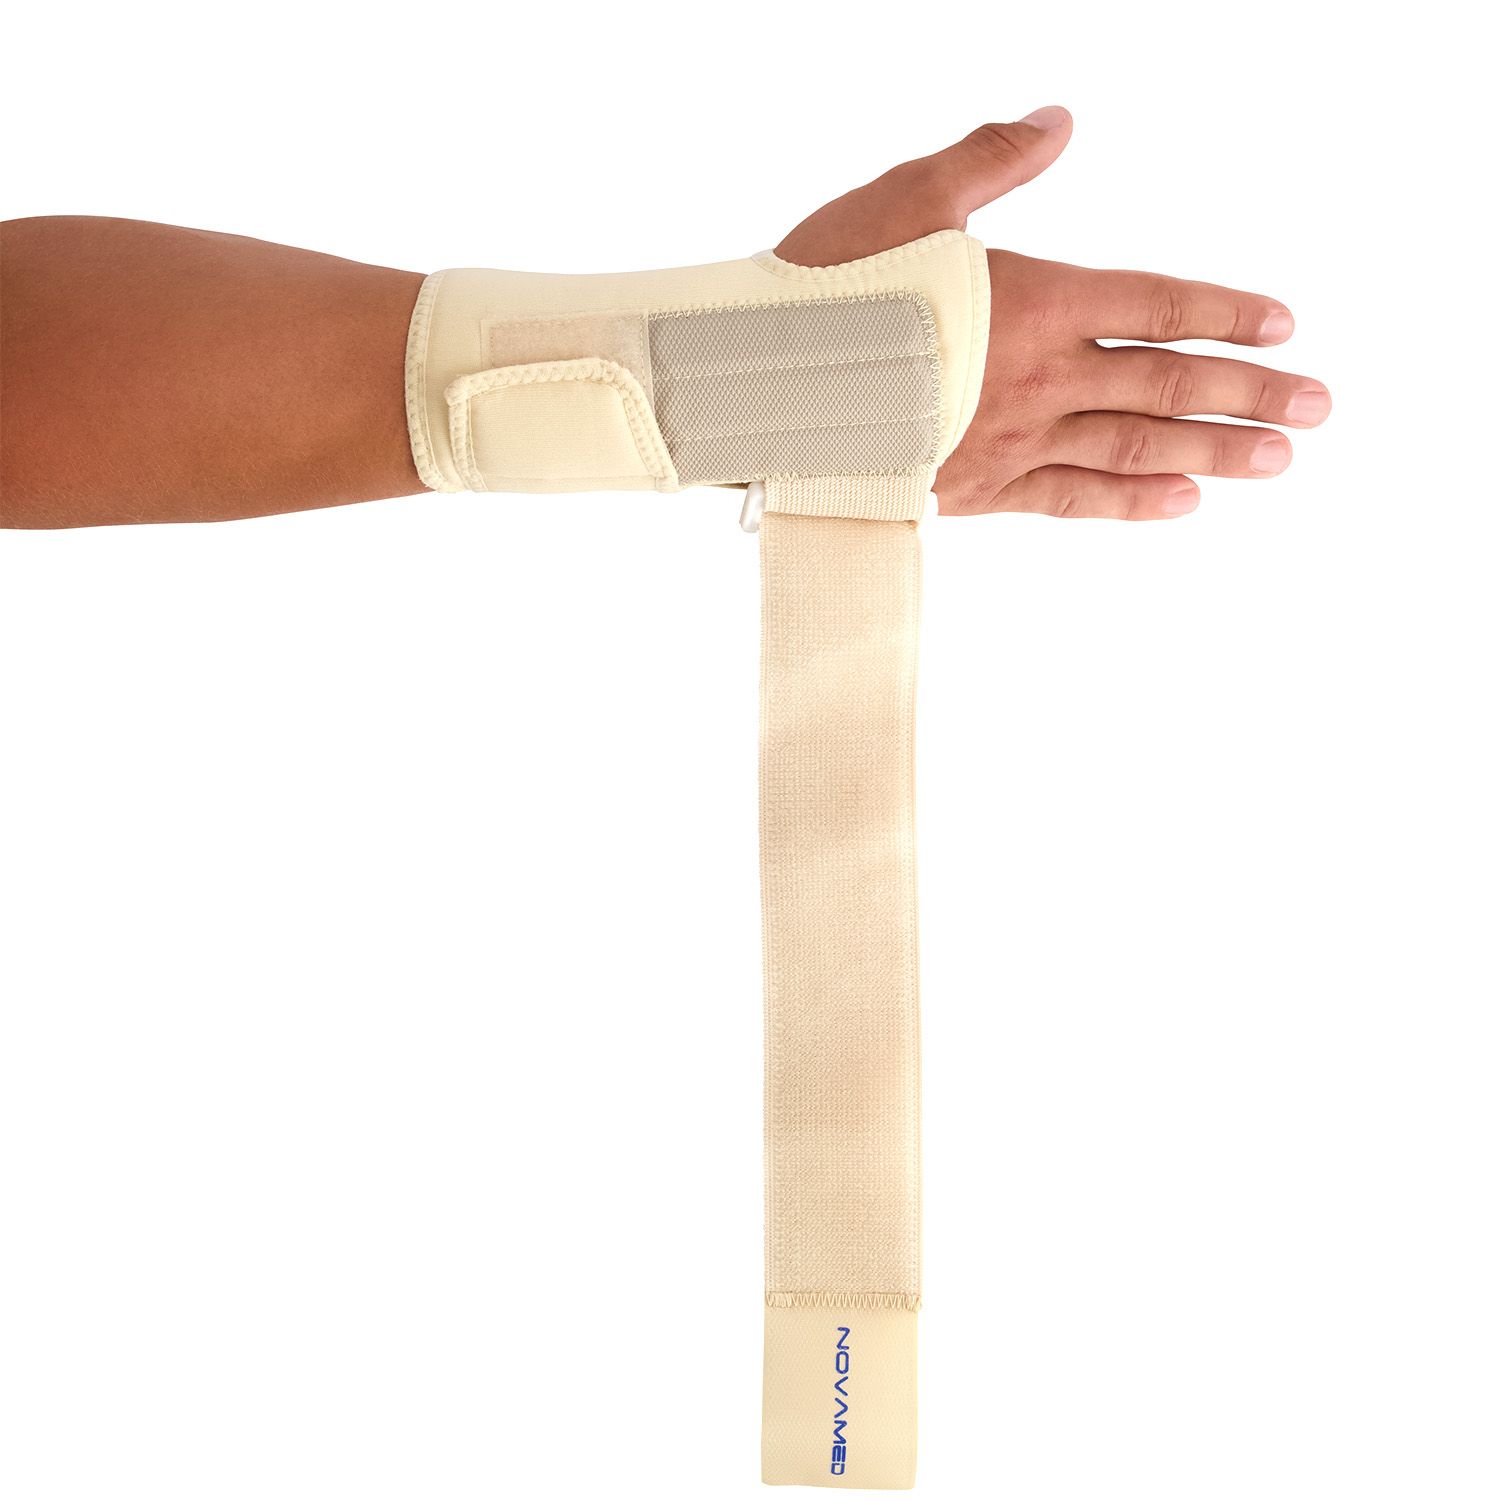 novamed lightweight wrist support strap lose